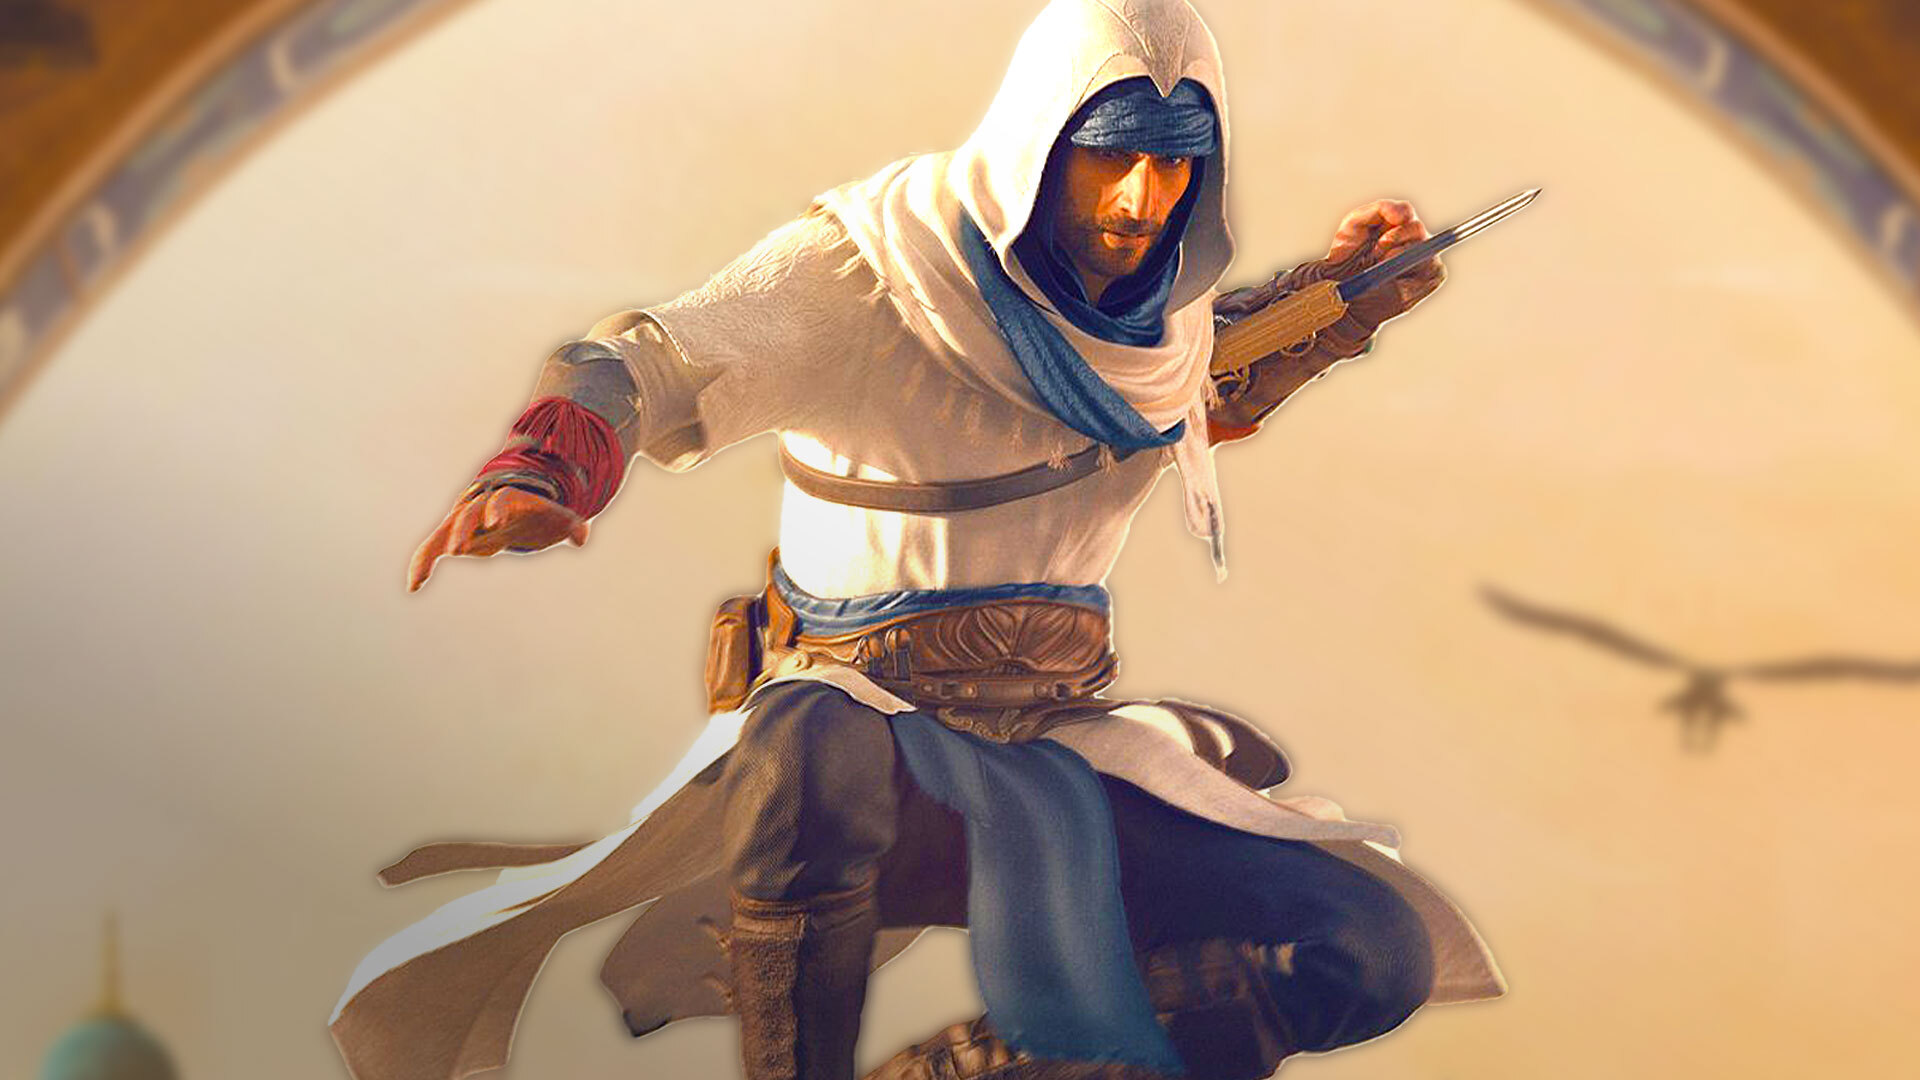 Ubisoft disponibiliza Assassin's Creed Syndicate de graça; saiba como  baixar o jogo - Tecnologia e Games - Folha PE